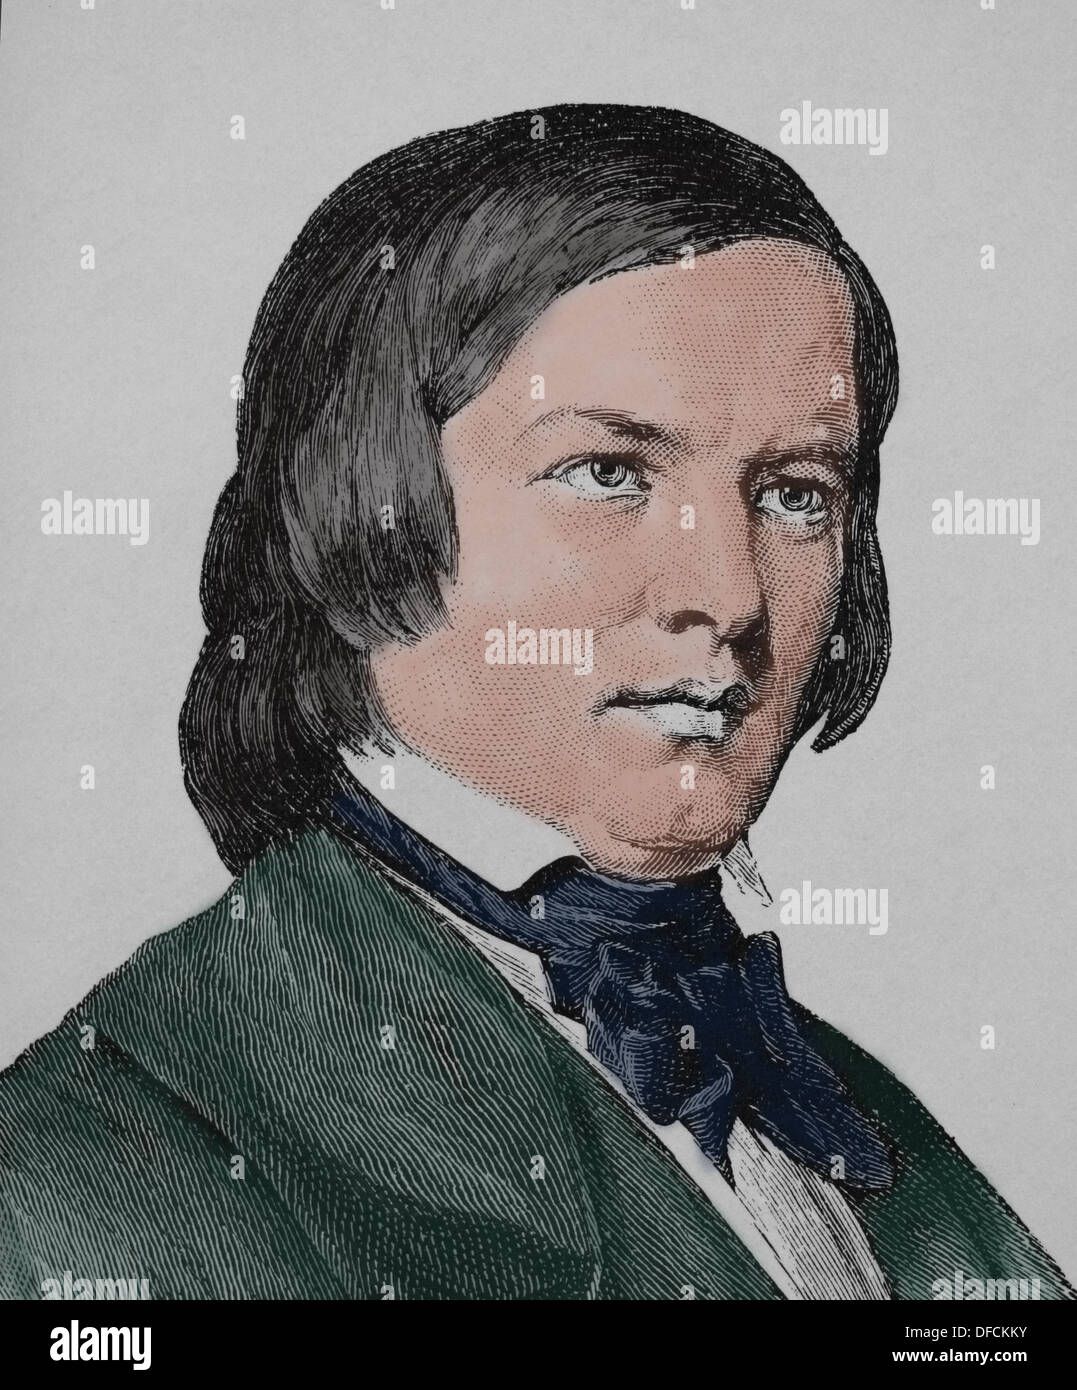 Robert Schumann (1810-1856). Deutscher Komponist und Klaviervirtuose. Romantische Ära. Gravur. des 19. Jahrhunderts. Stockfoto